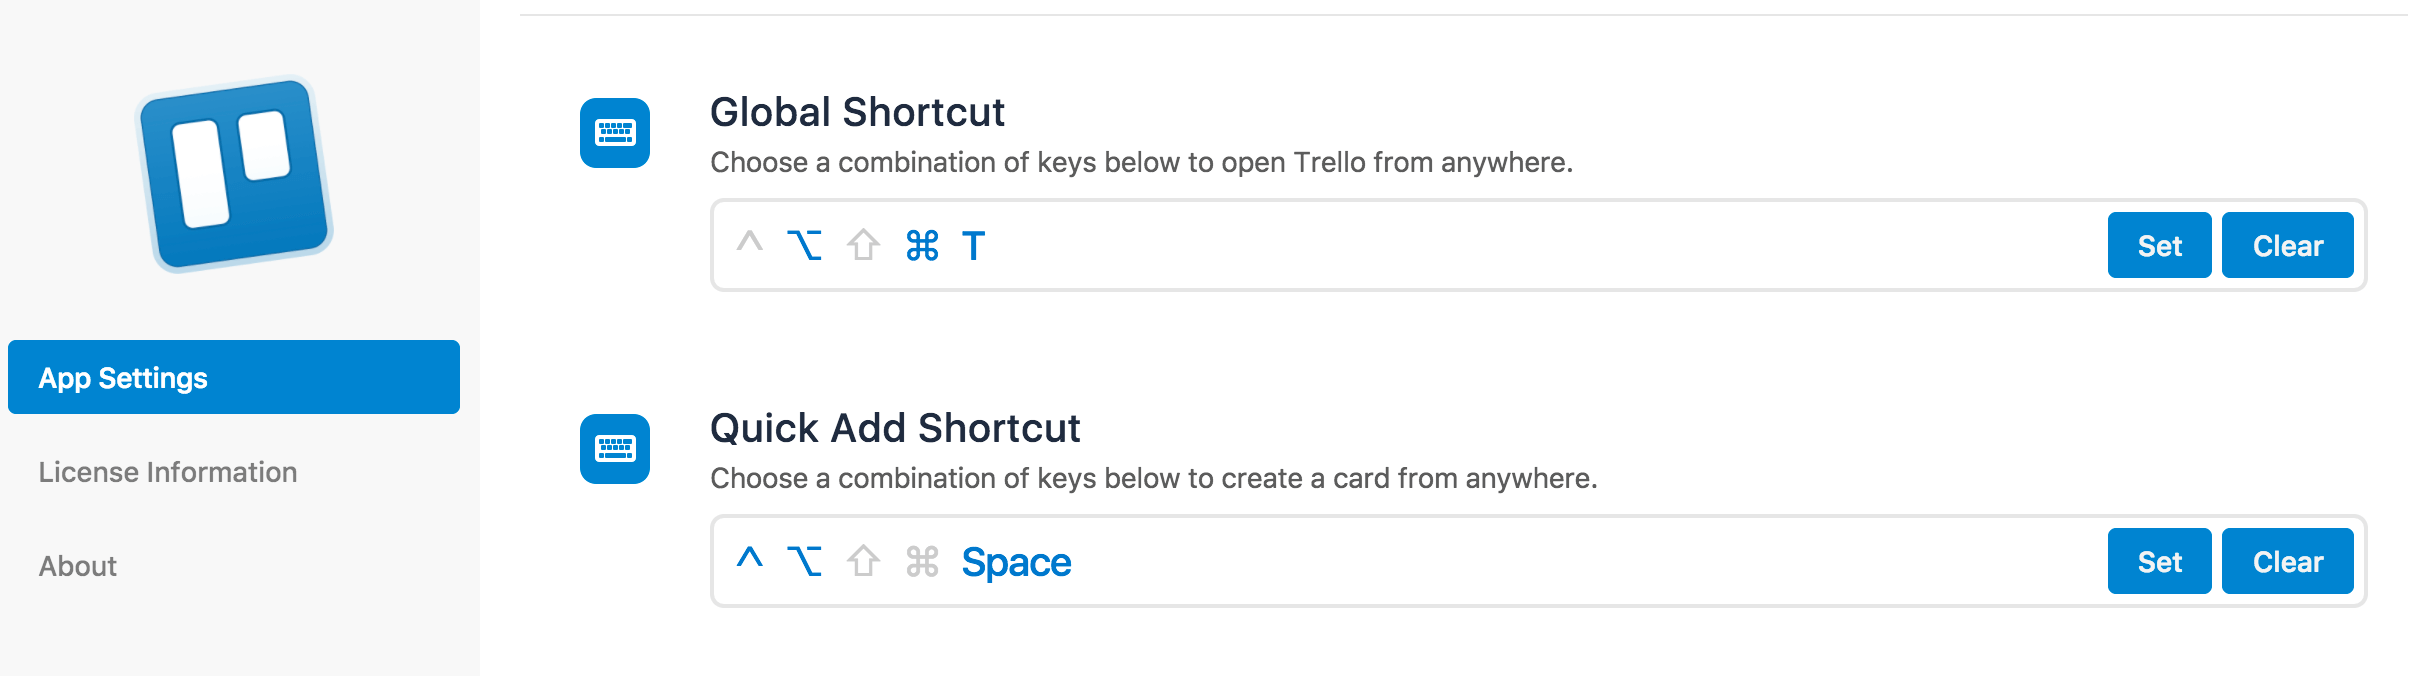 Trello app shortcuts